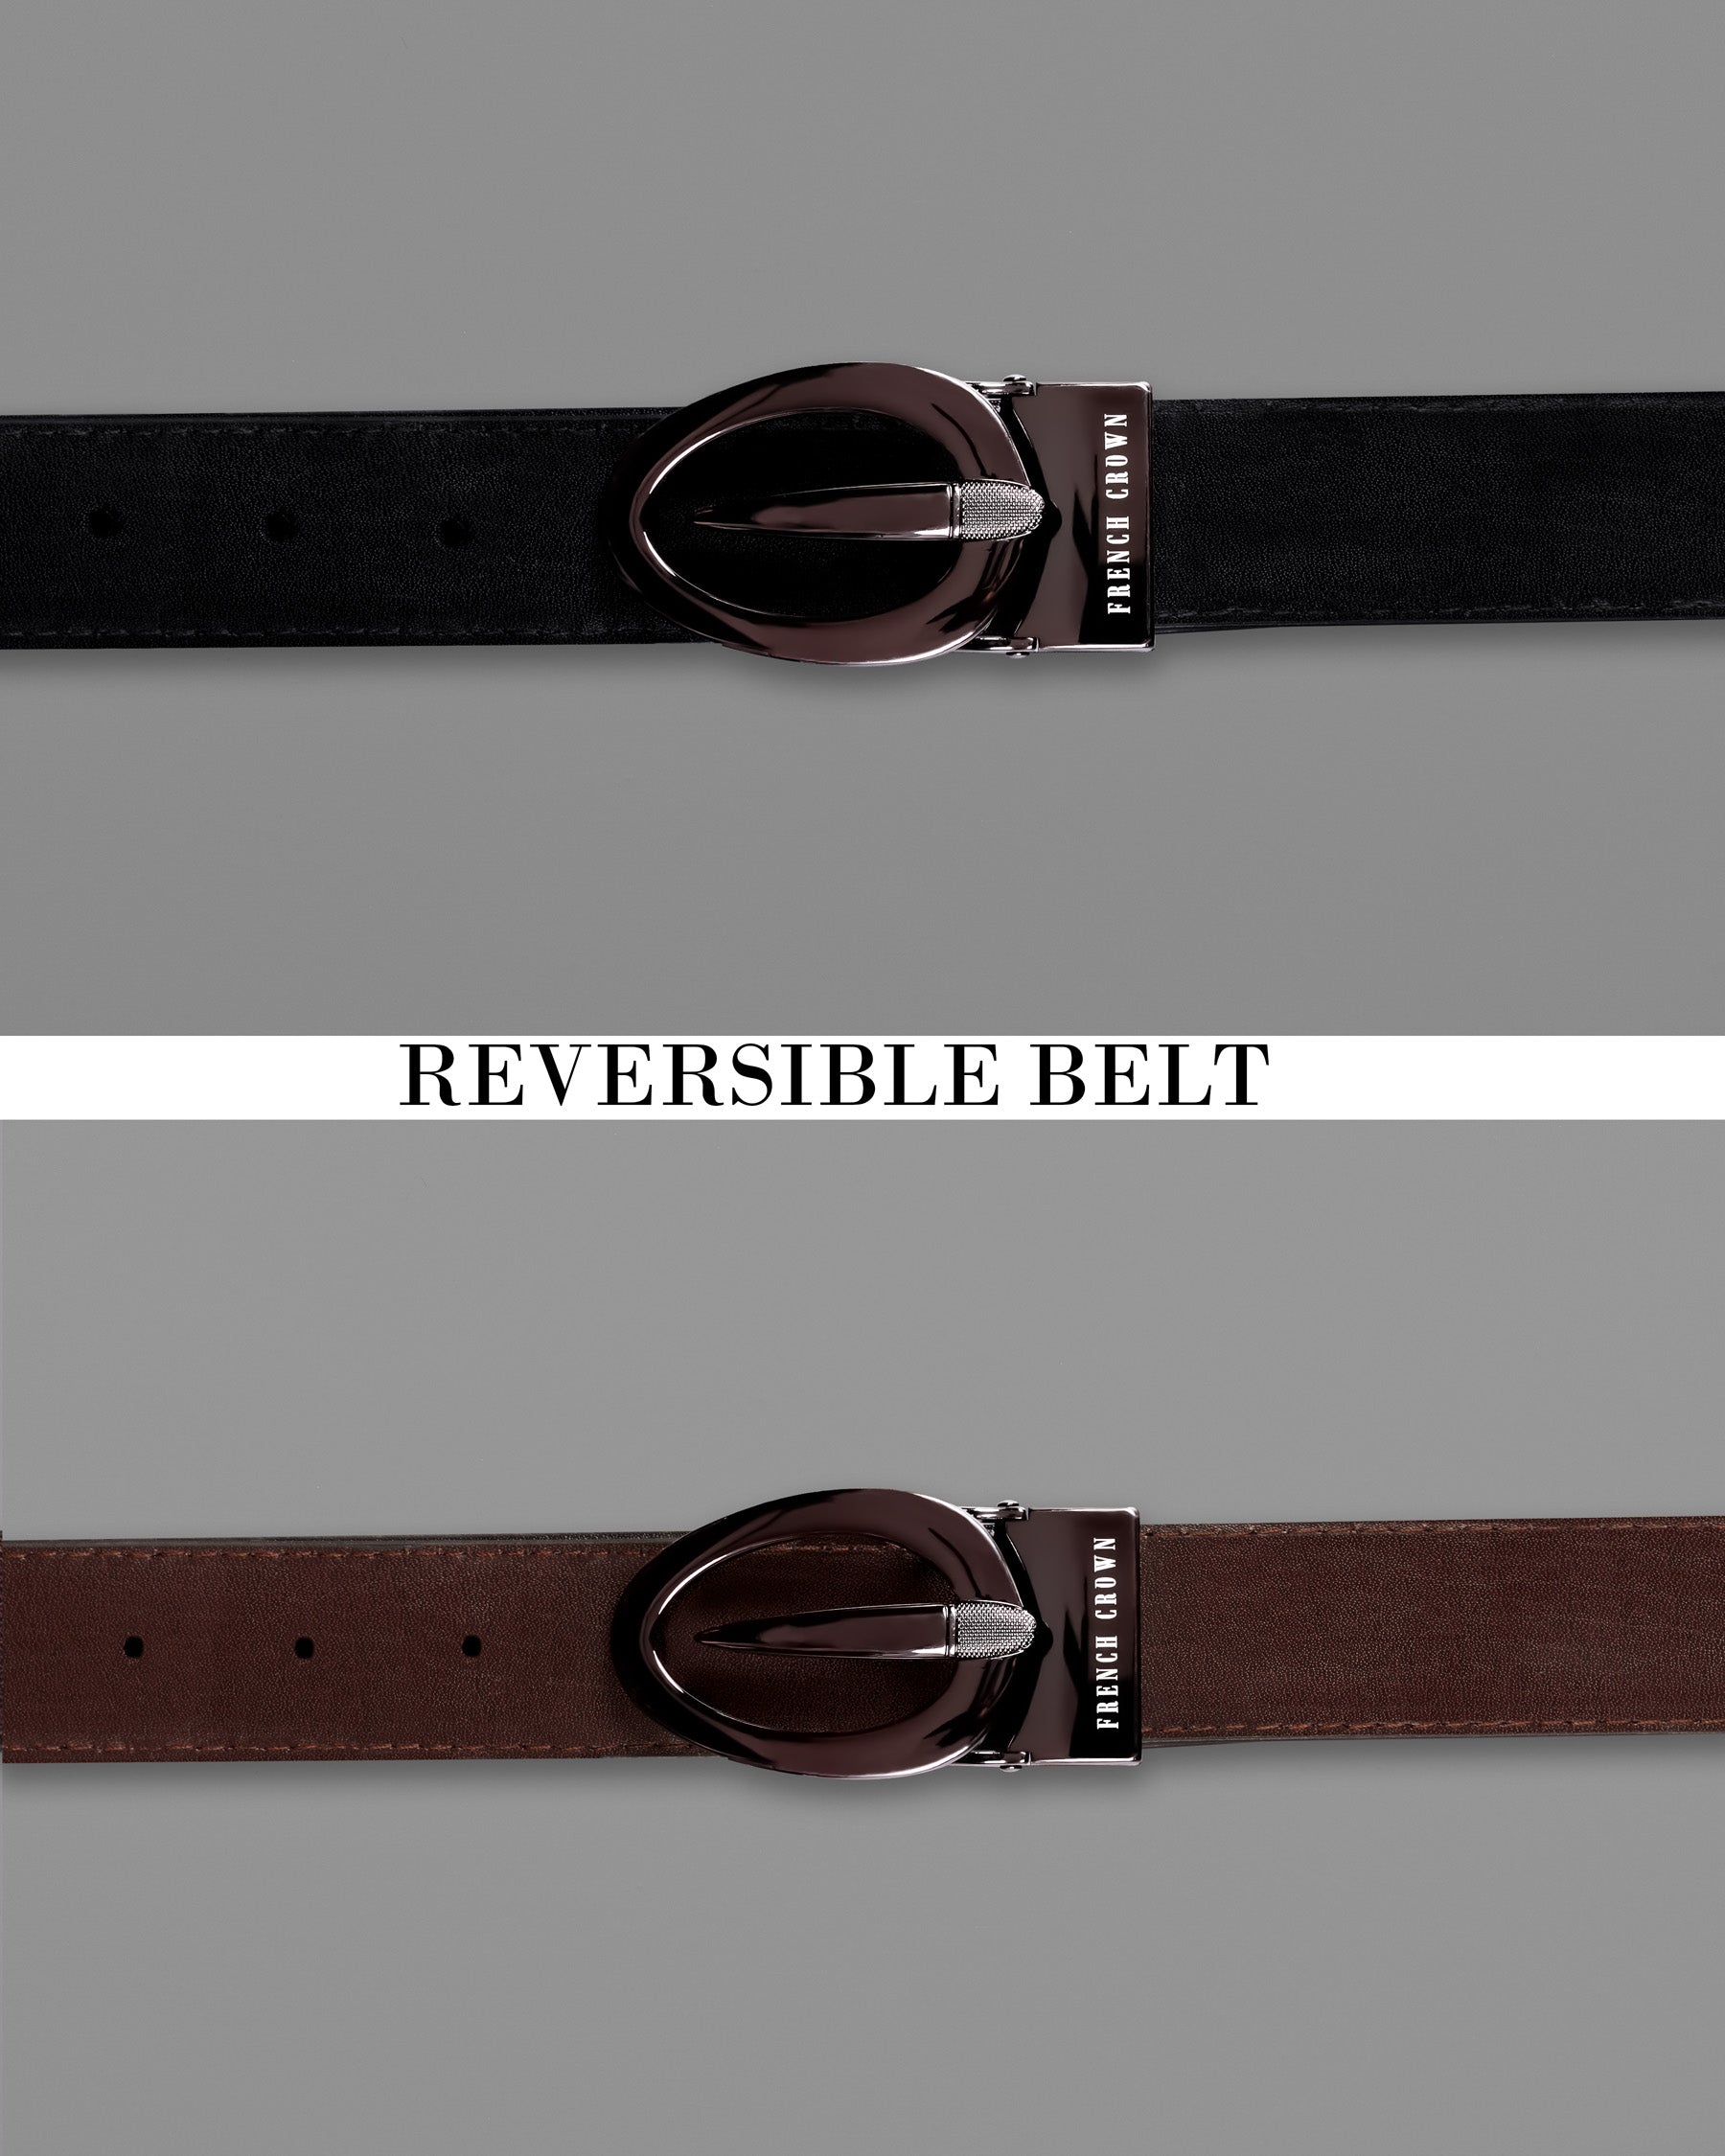 Rose Gold Grey Oval  buckled Reversible jade Black and Brown Vegan Leather Handcrafted Belt BT028-28, BT028-30, BT028-32, BT028-34, BT028-36, BT028-38